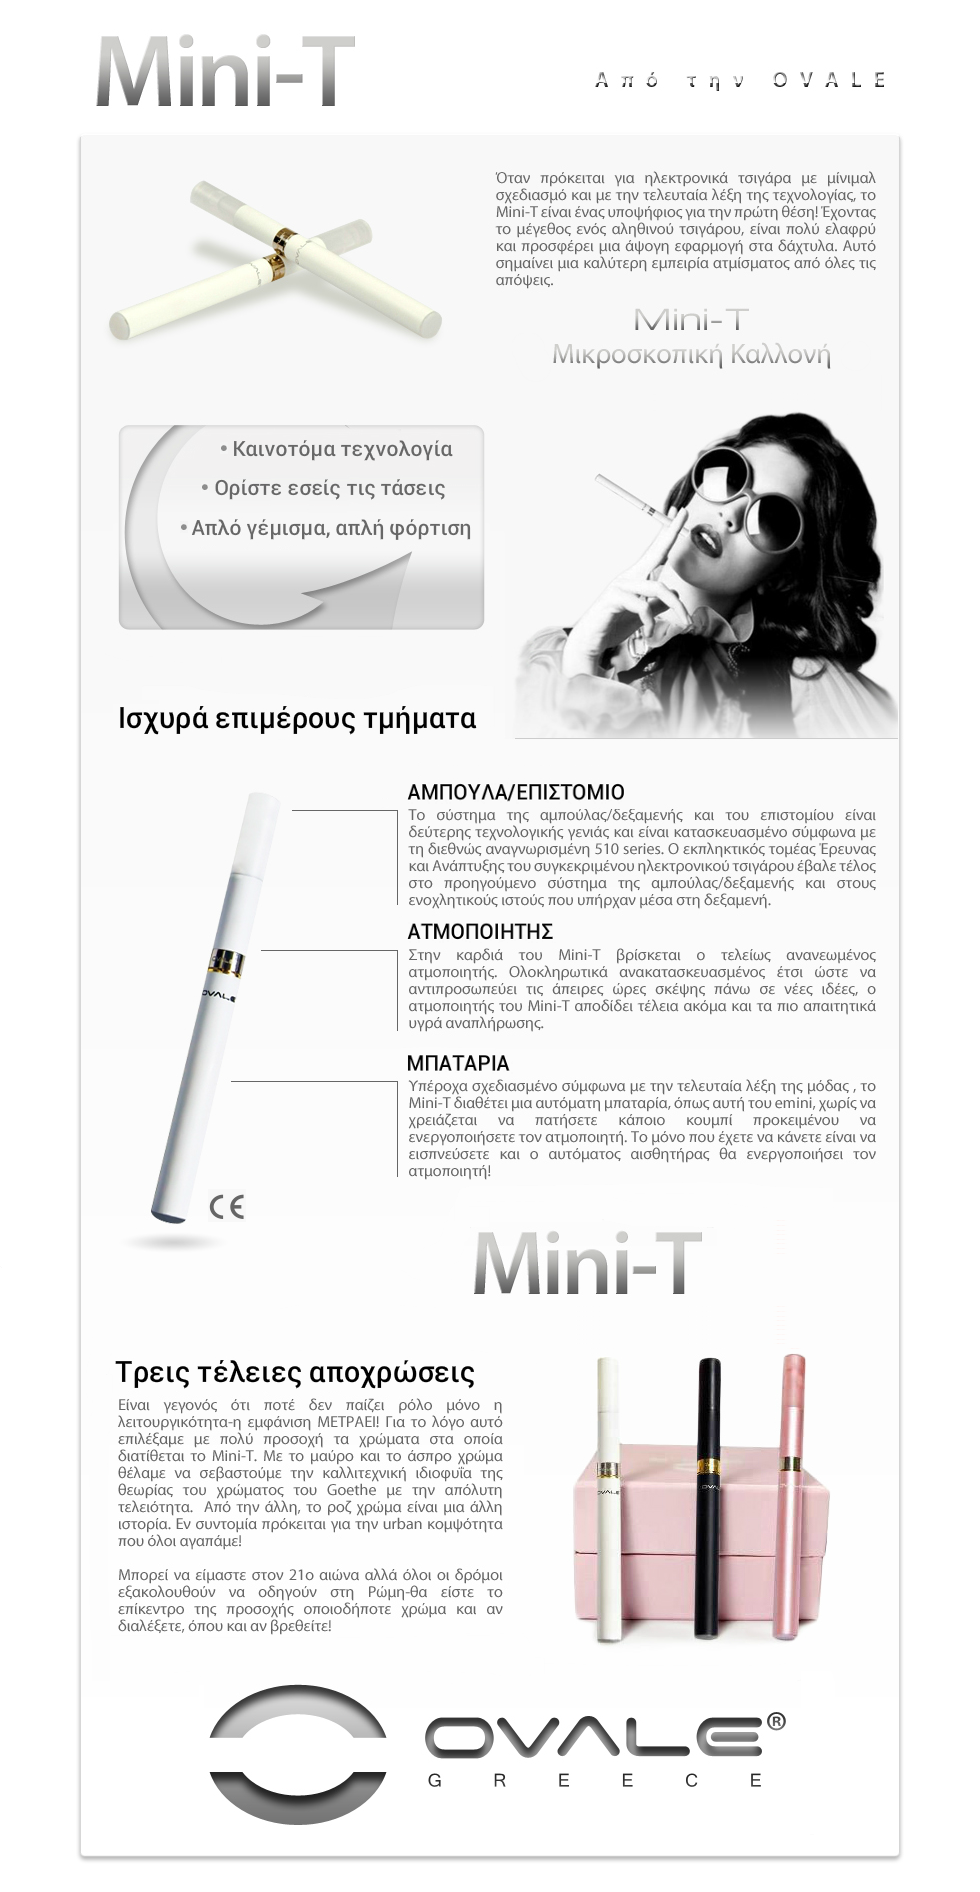 ηλεκτρονικό τσιγάρο, υγρό αναπλήρωσης ηλεκτρονικού τσιγάρου, κόψιμο καπνίσματος, ovale, joyetech, mini